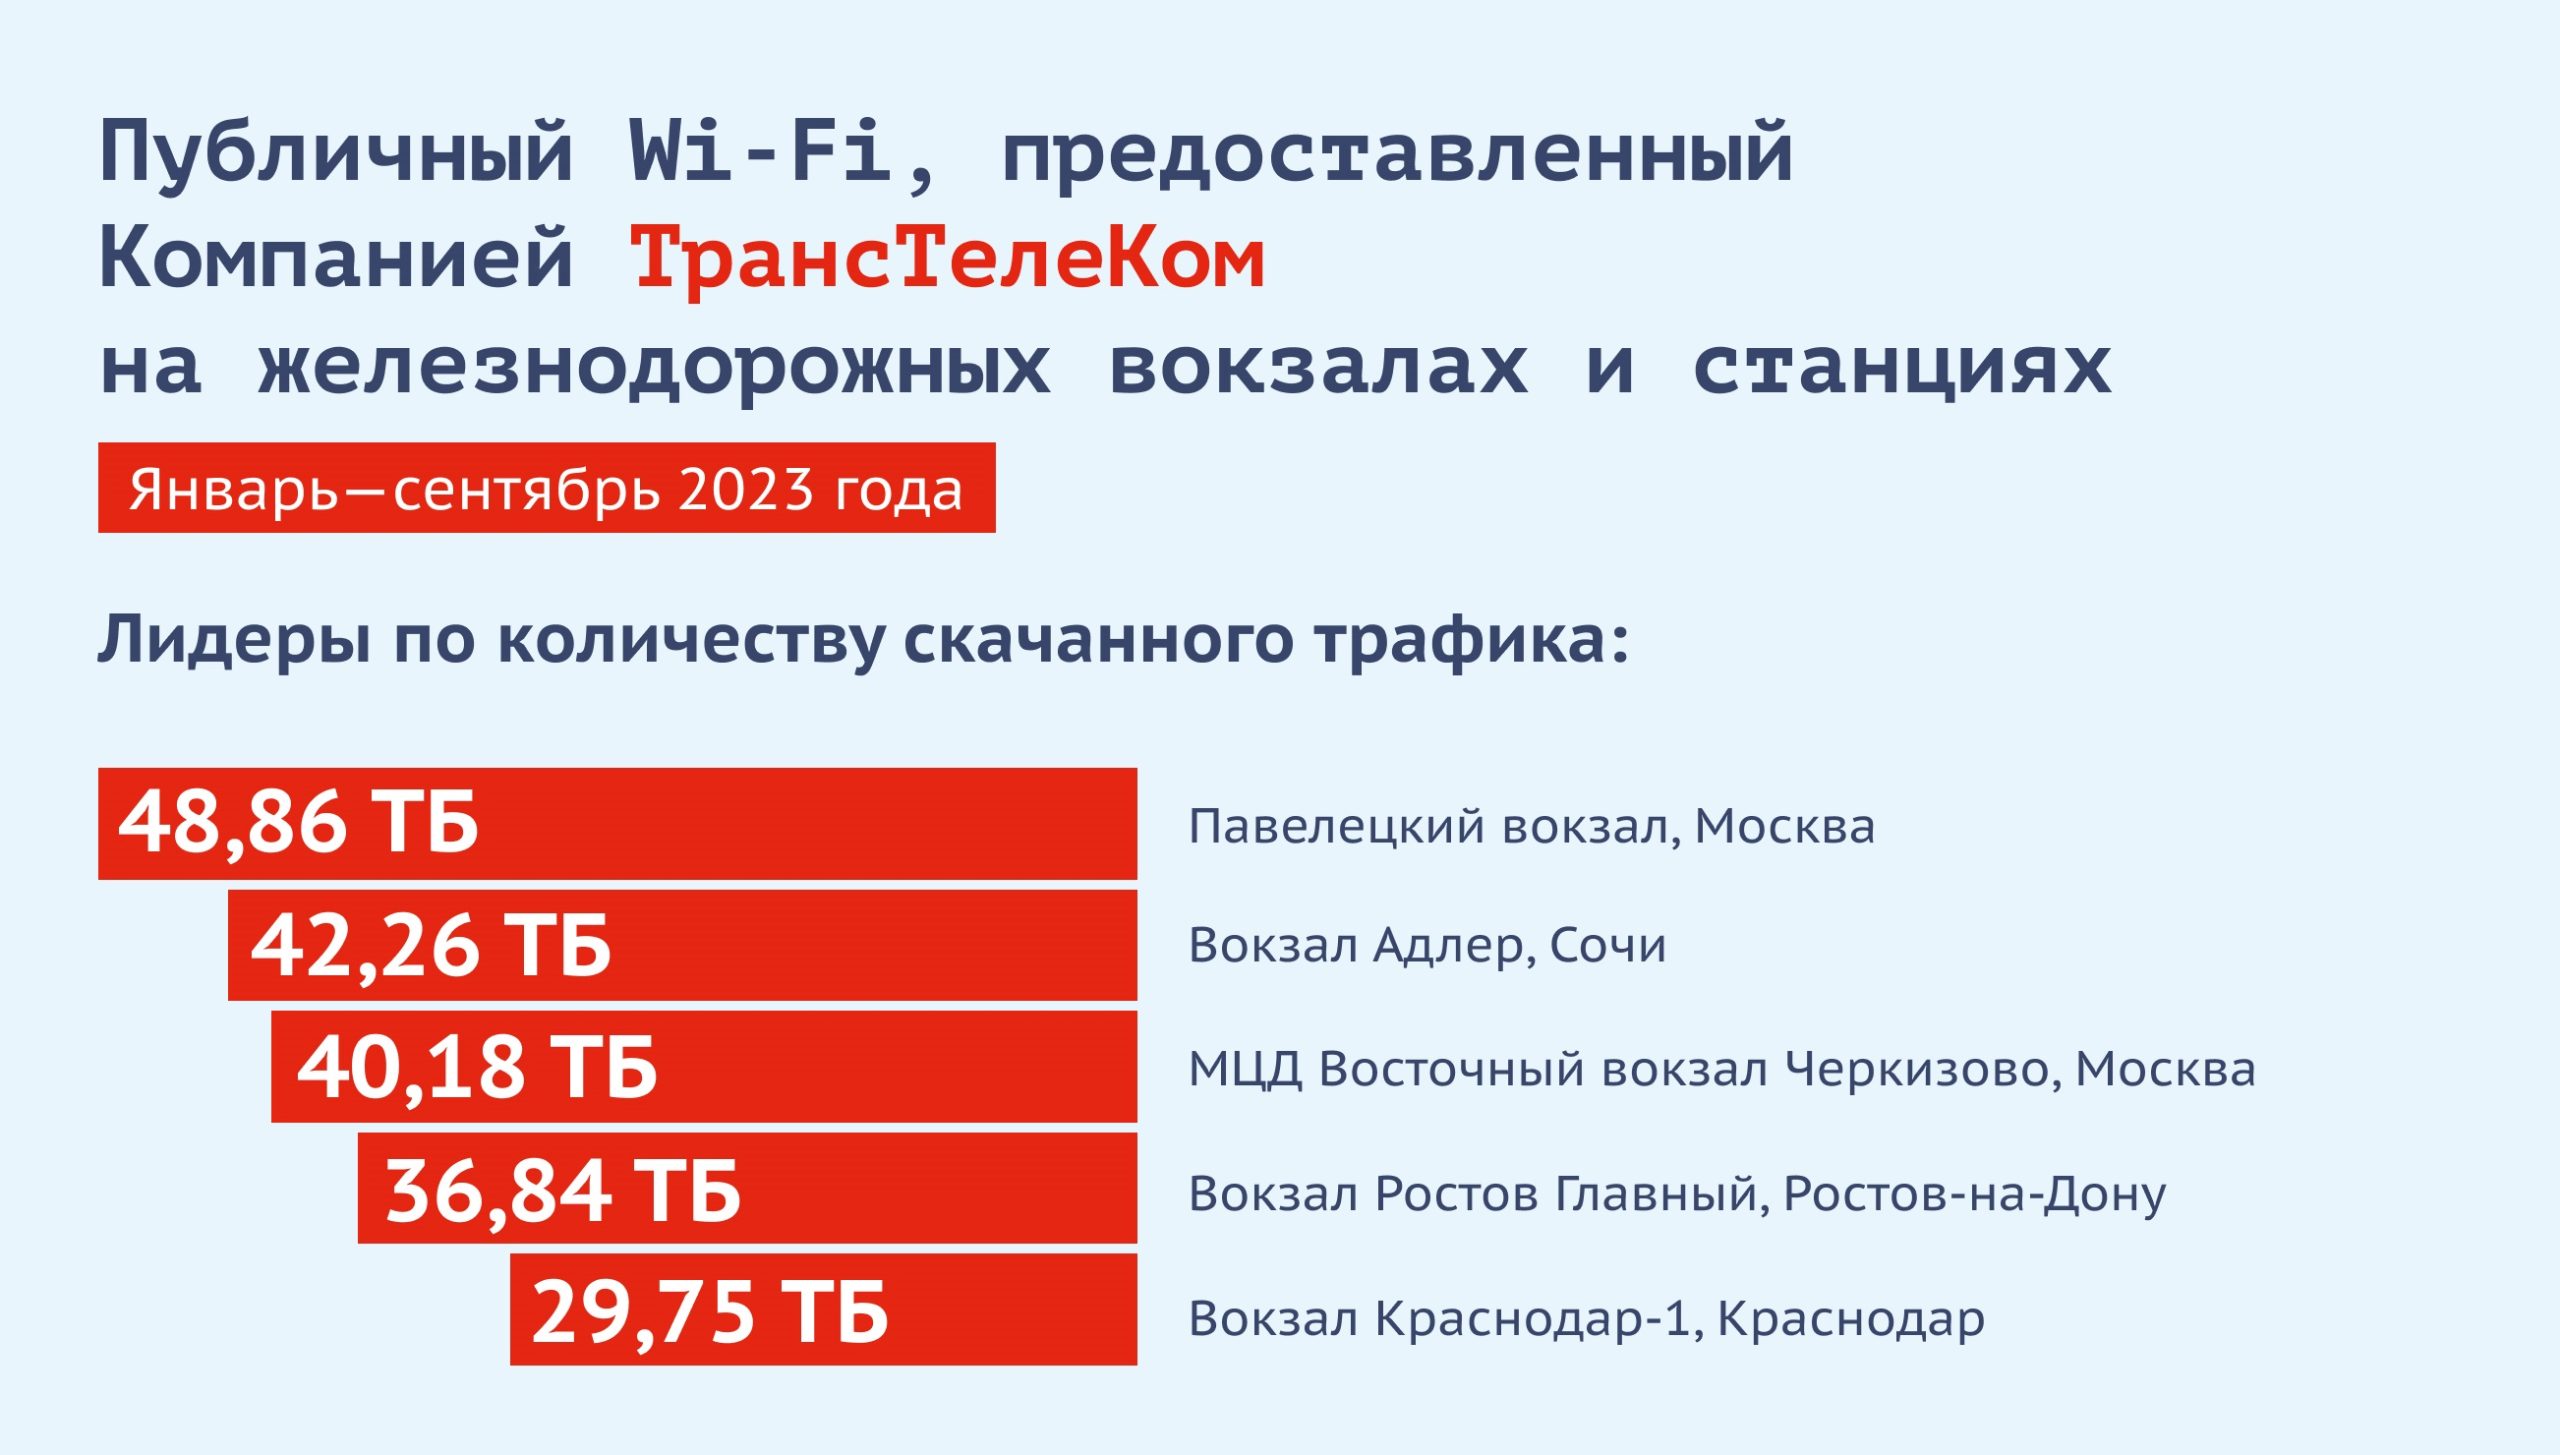 Wi Fi infografika3 scaled